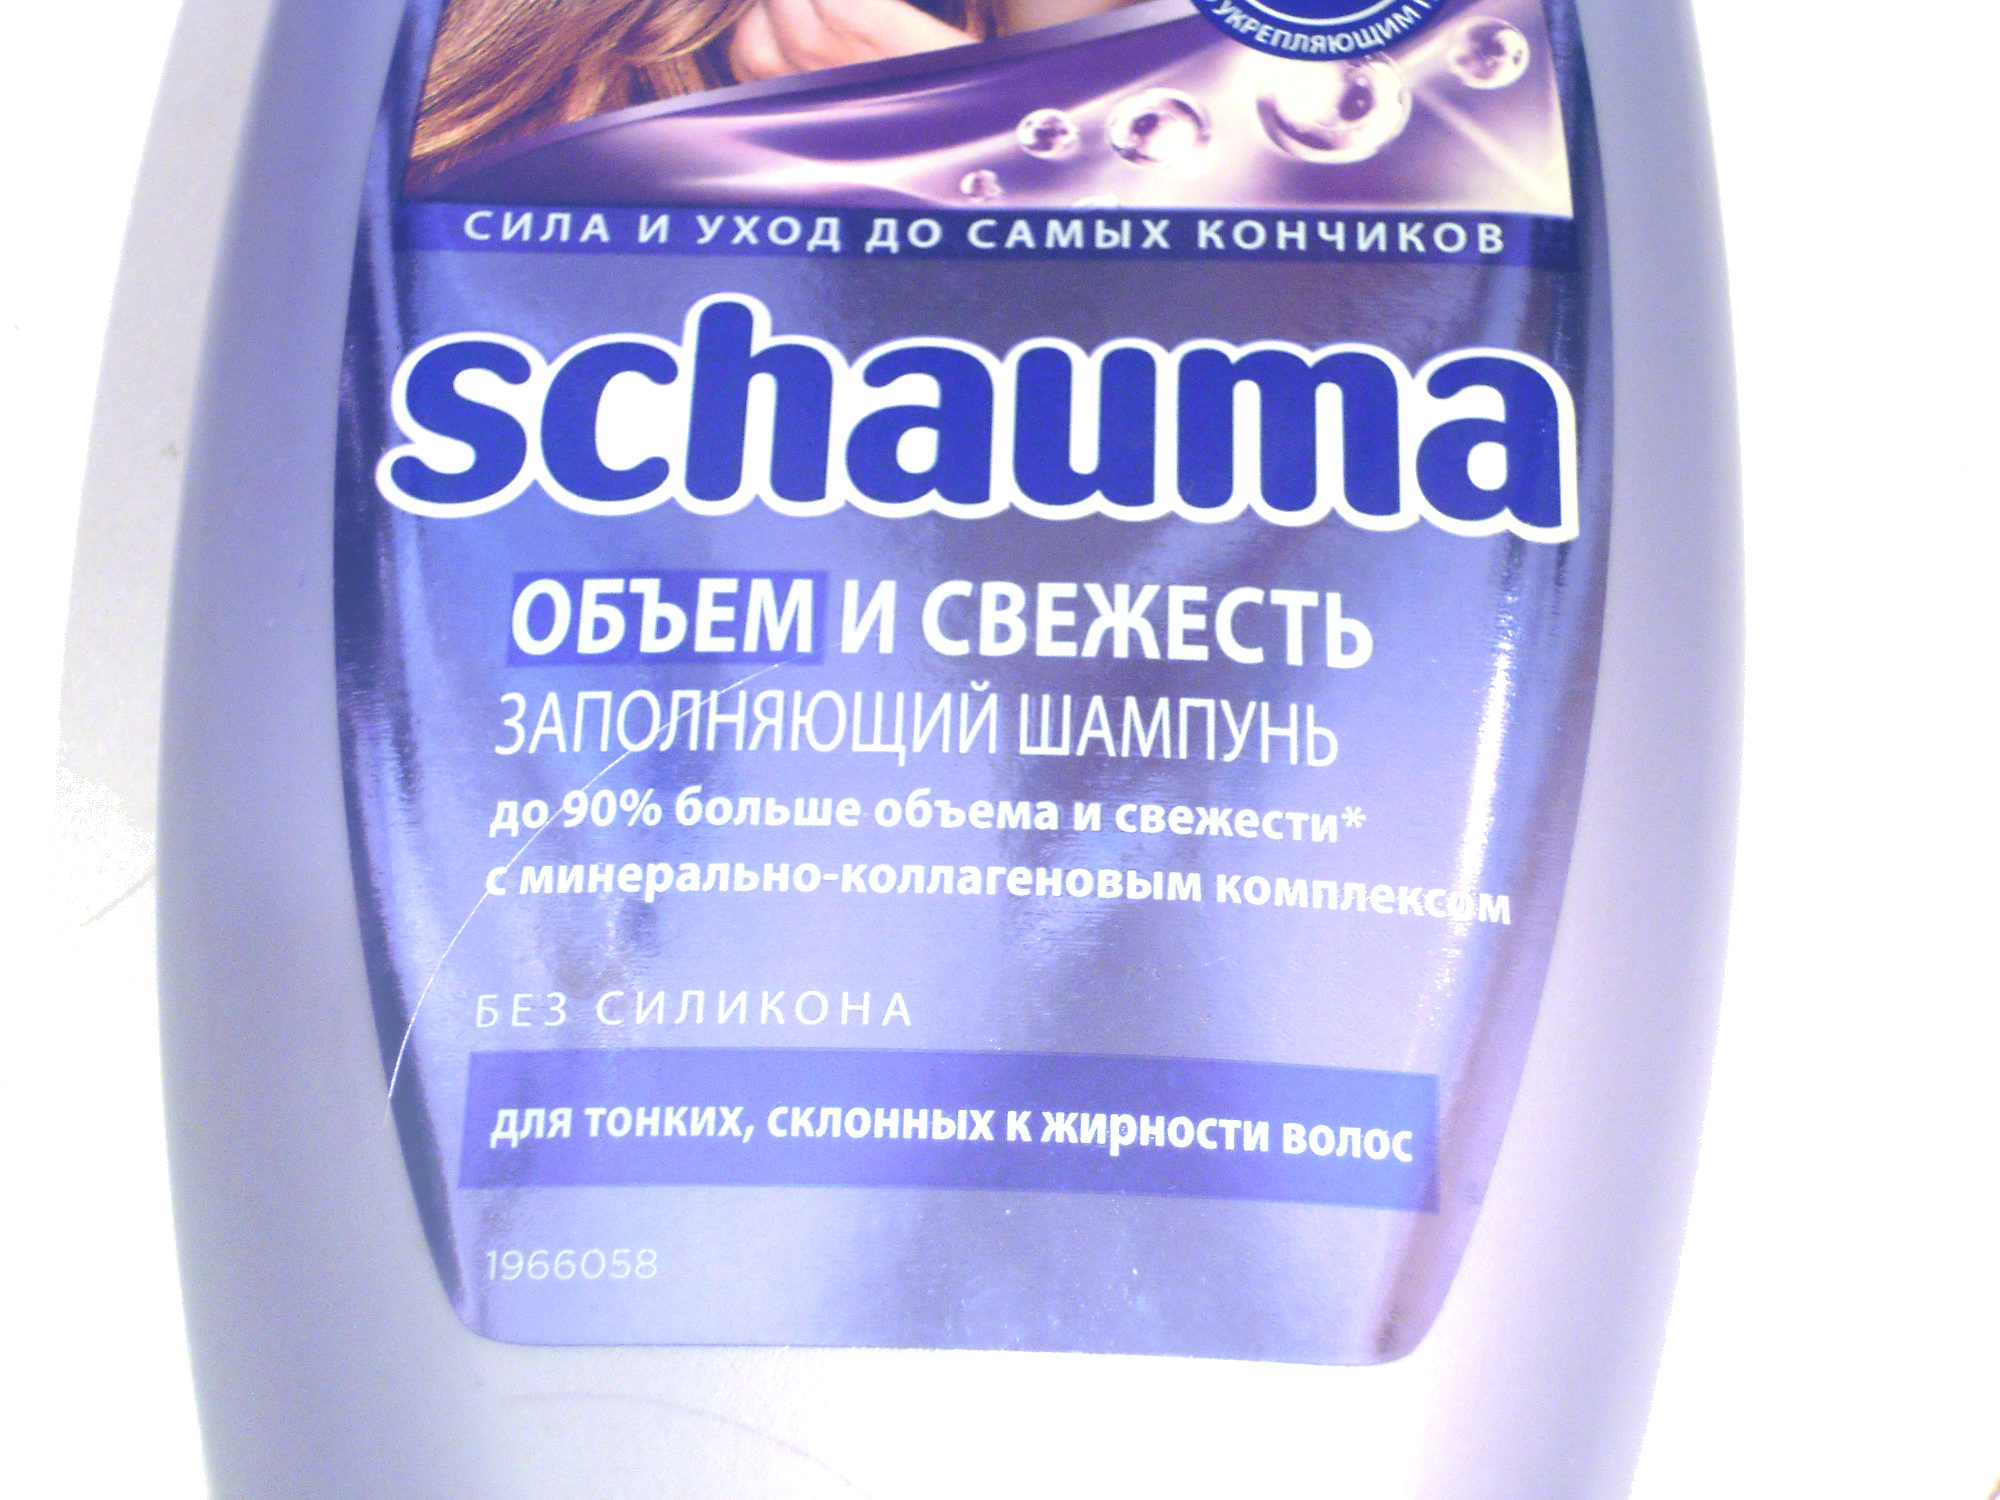 Schauma объем и свежесть (заполняющий шампунь) - Product - ru